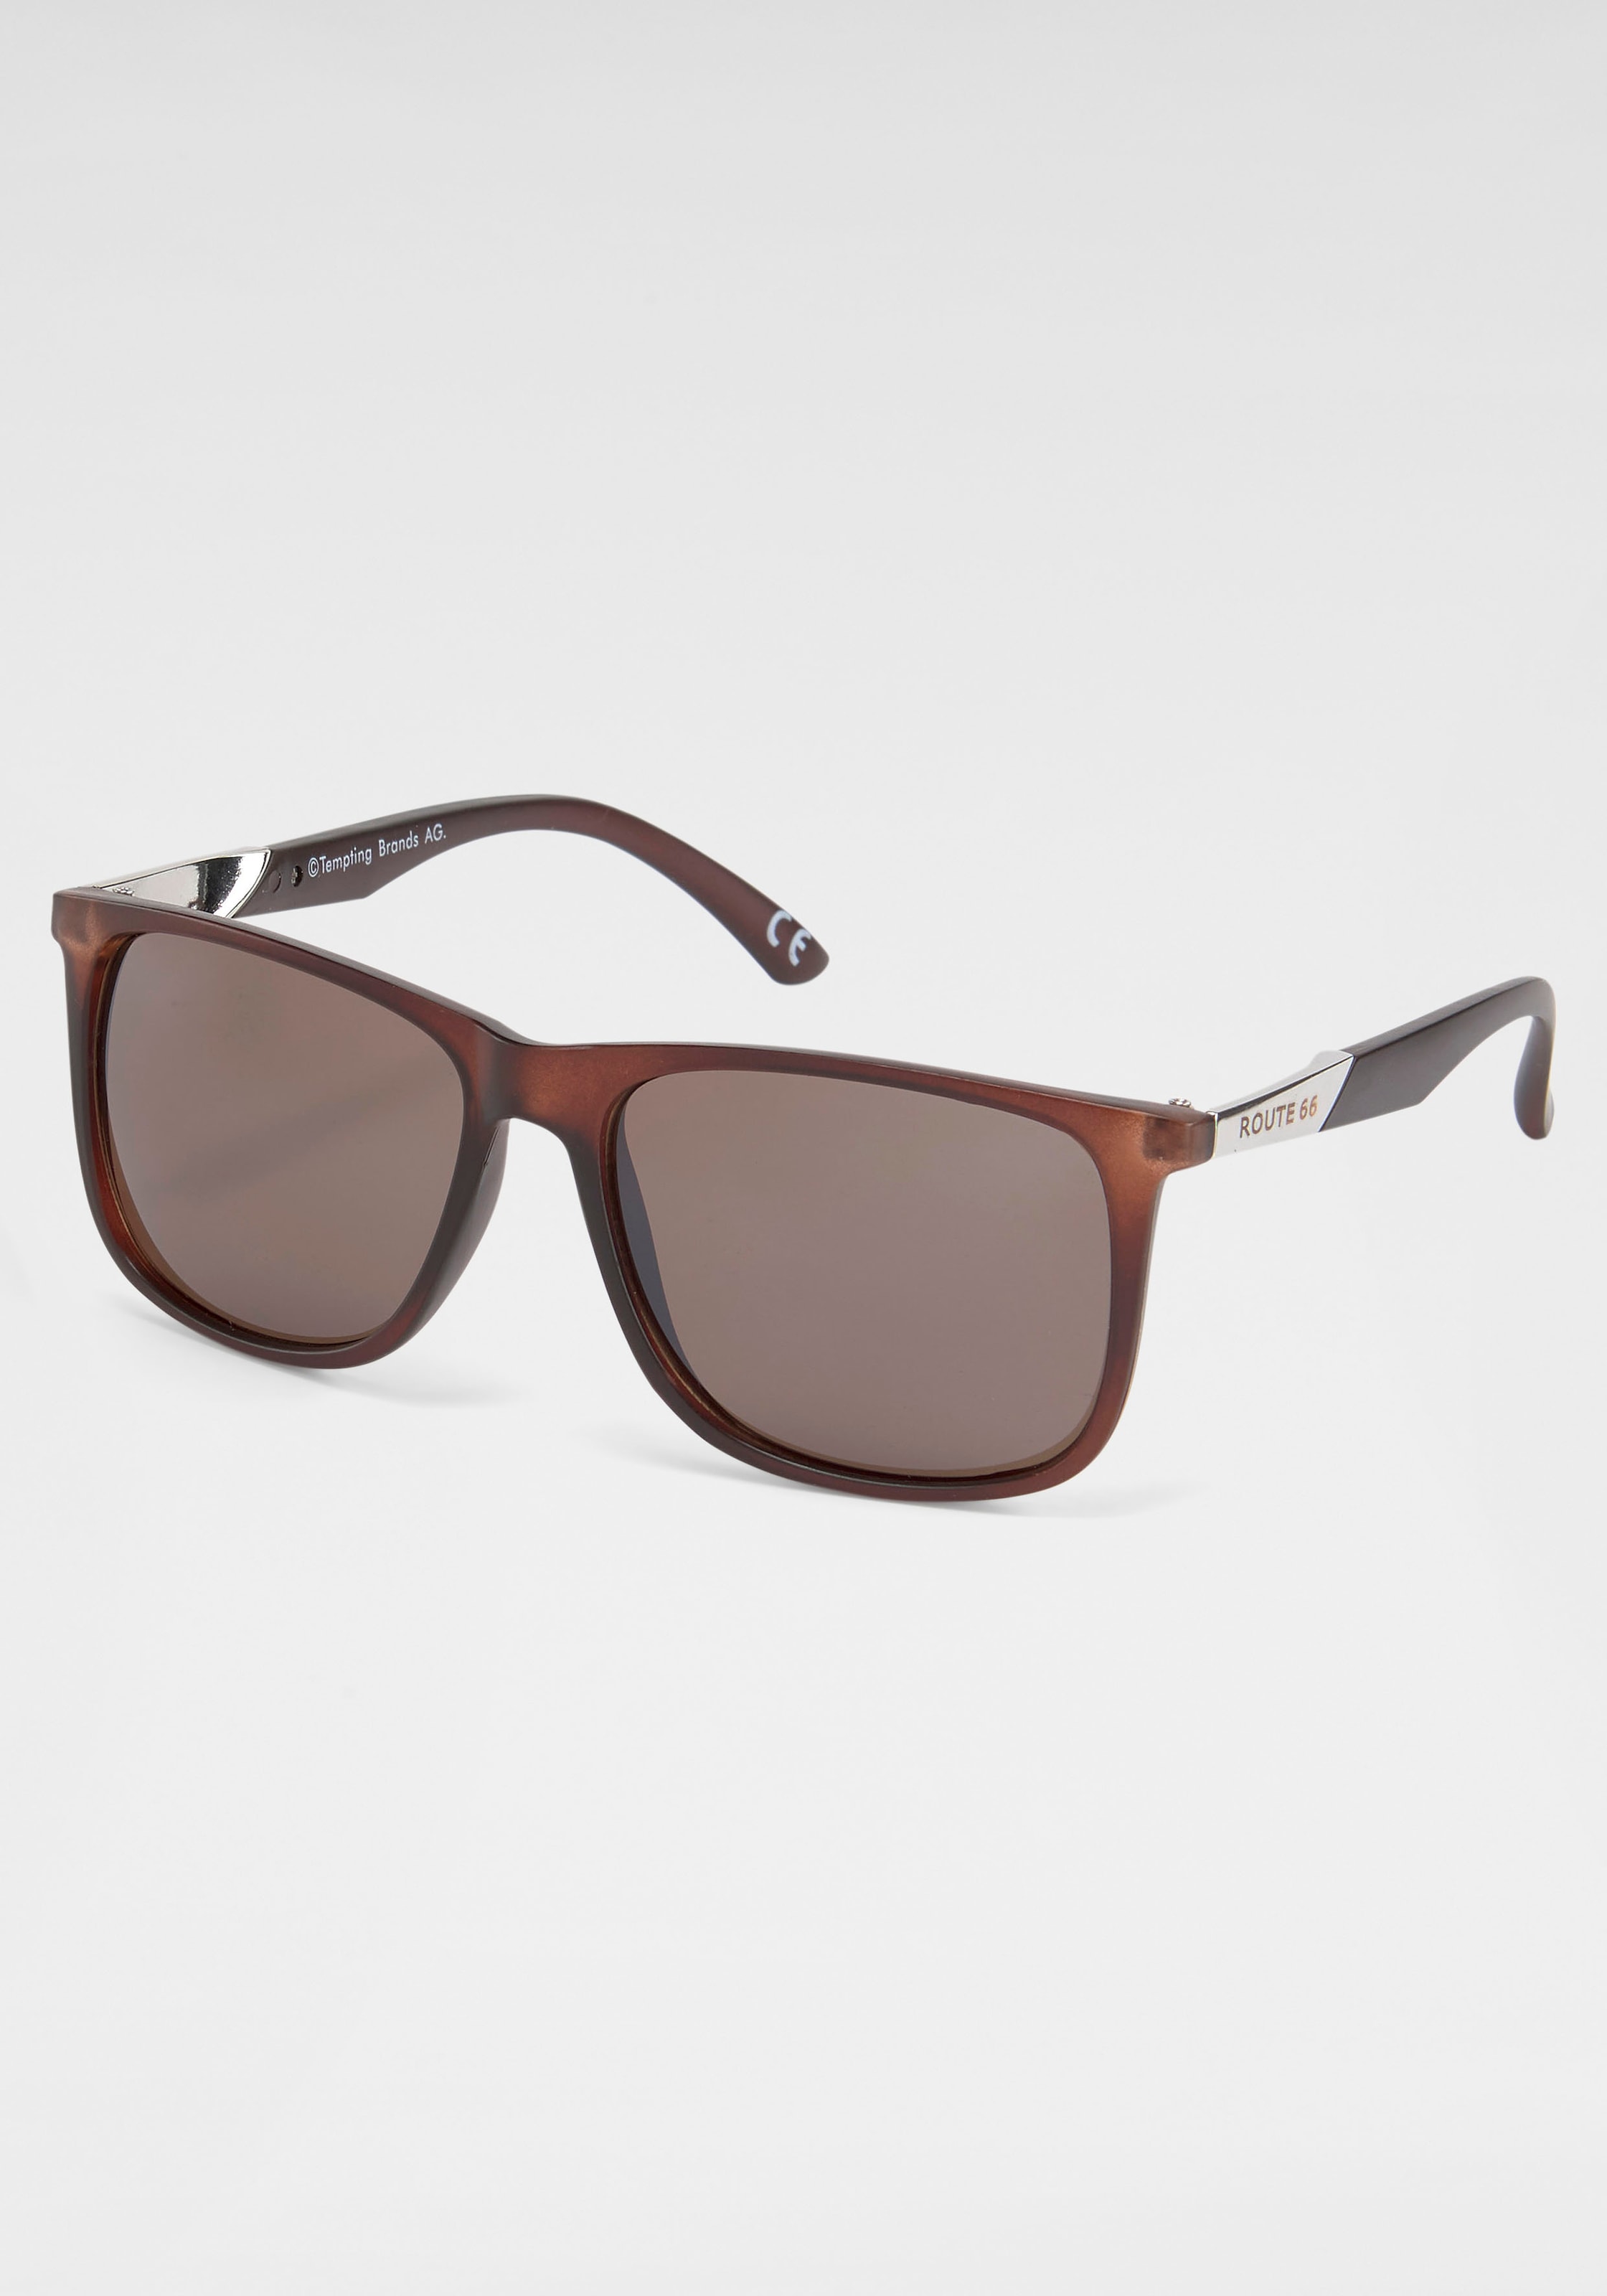 catwalk Eyewear Sonnenbrille online shoppen bei OTTO